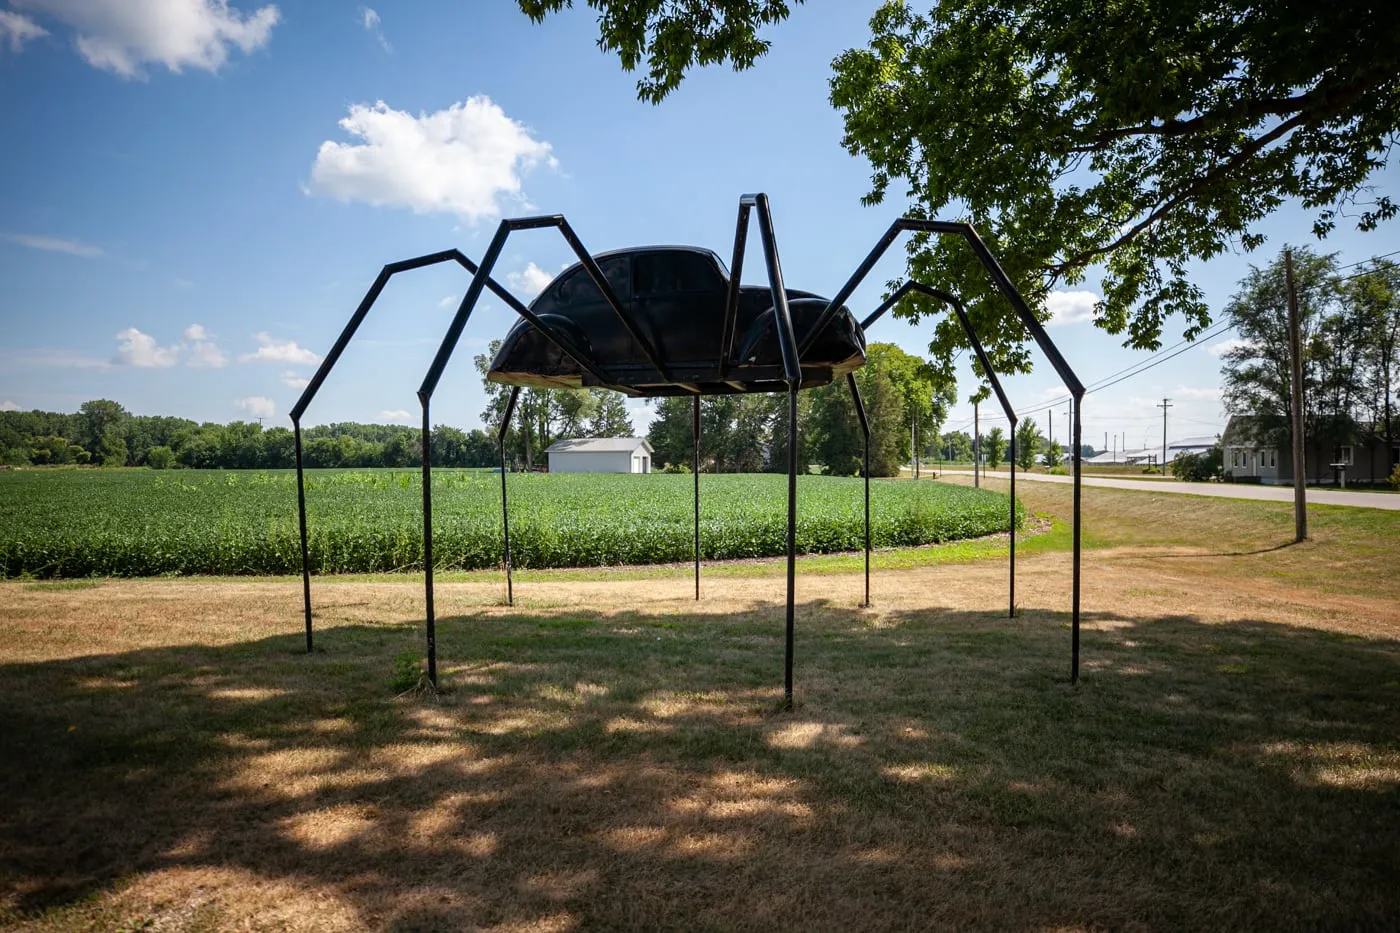 Giant Volkswagen beetle spider in Avoca, Iowa. |Iowa Roadside Attractions.